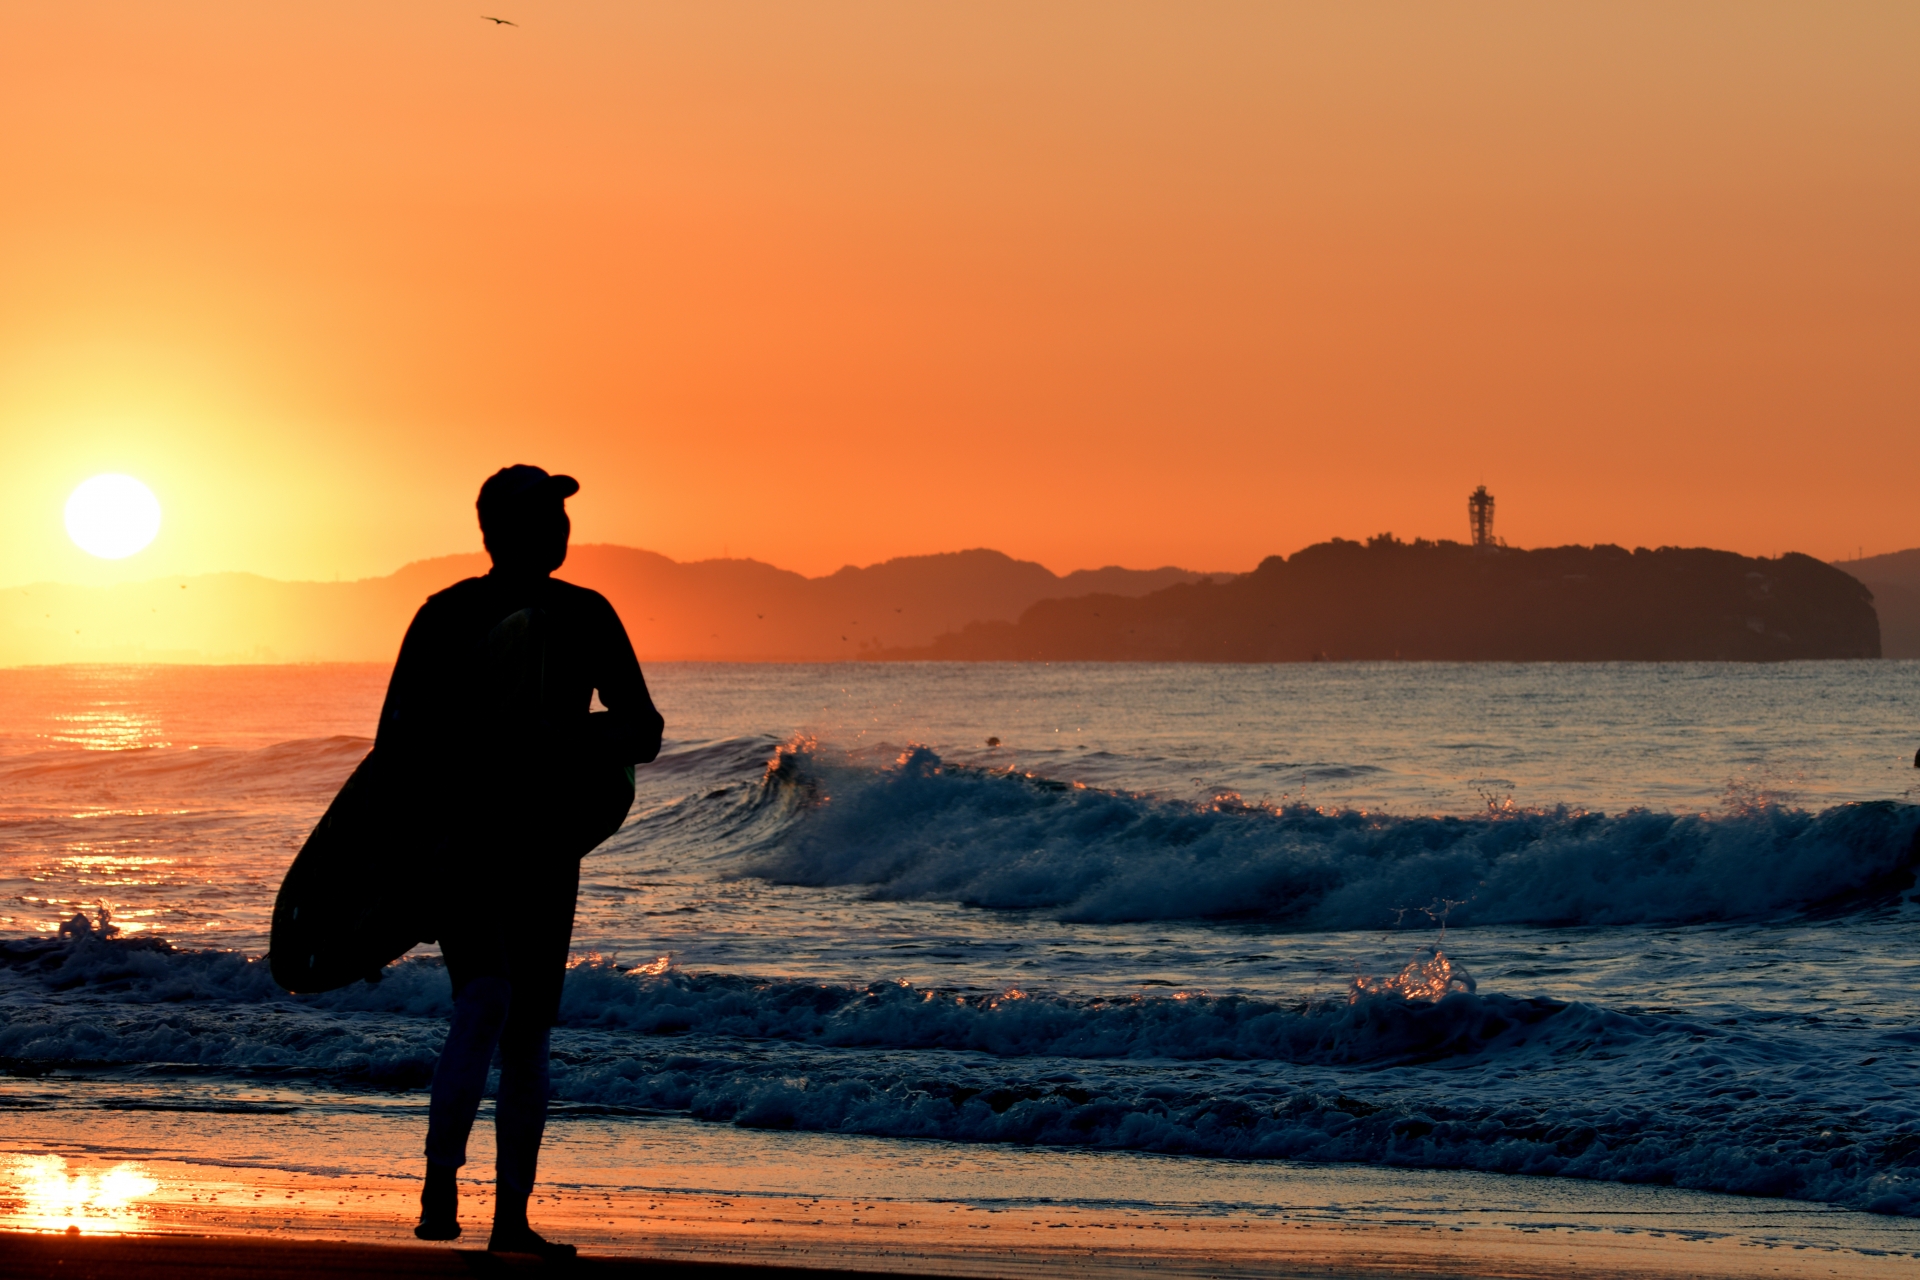 Meilleurs spots de surf : où surfer au Japon